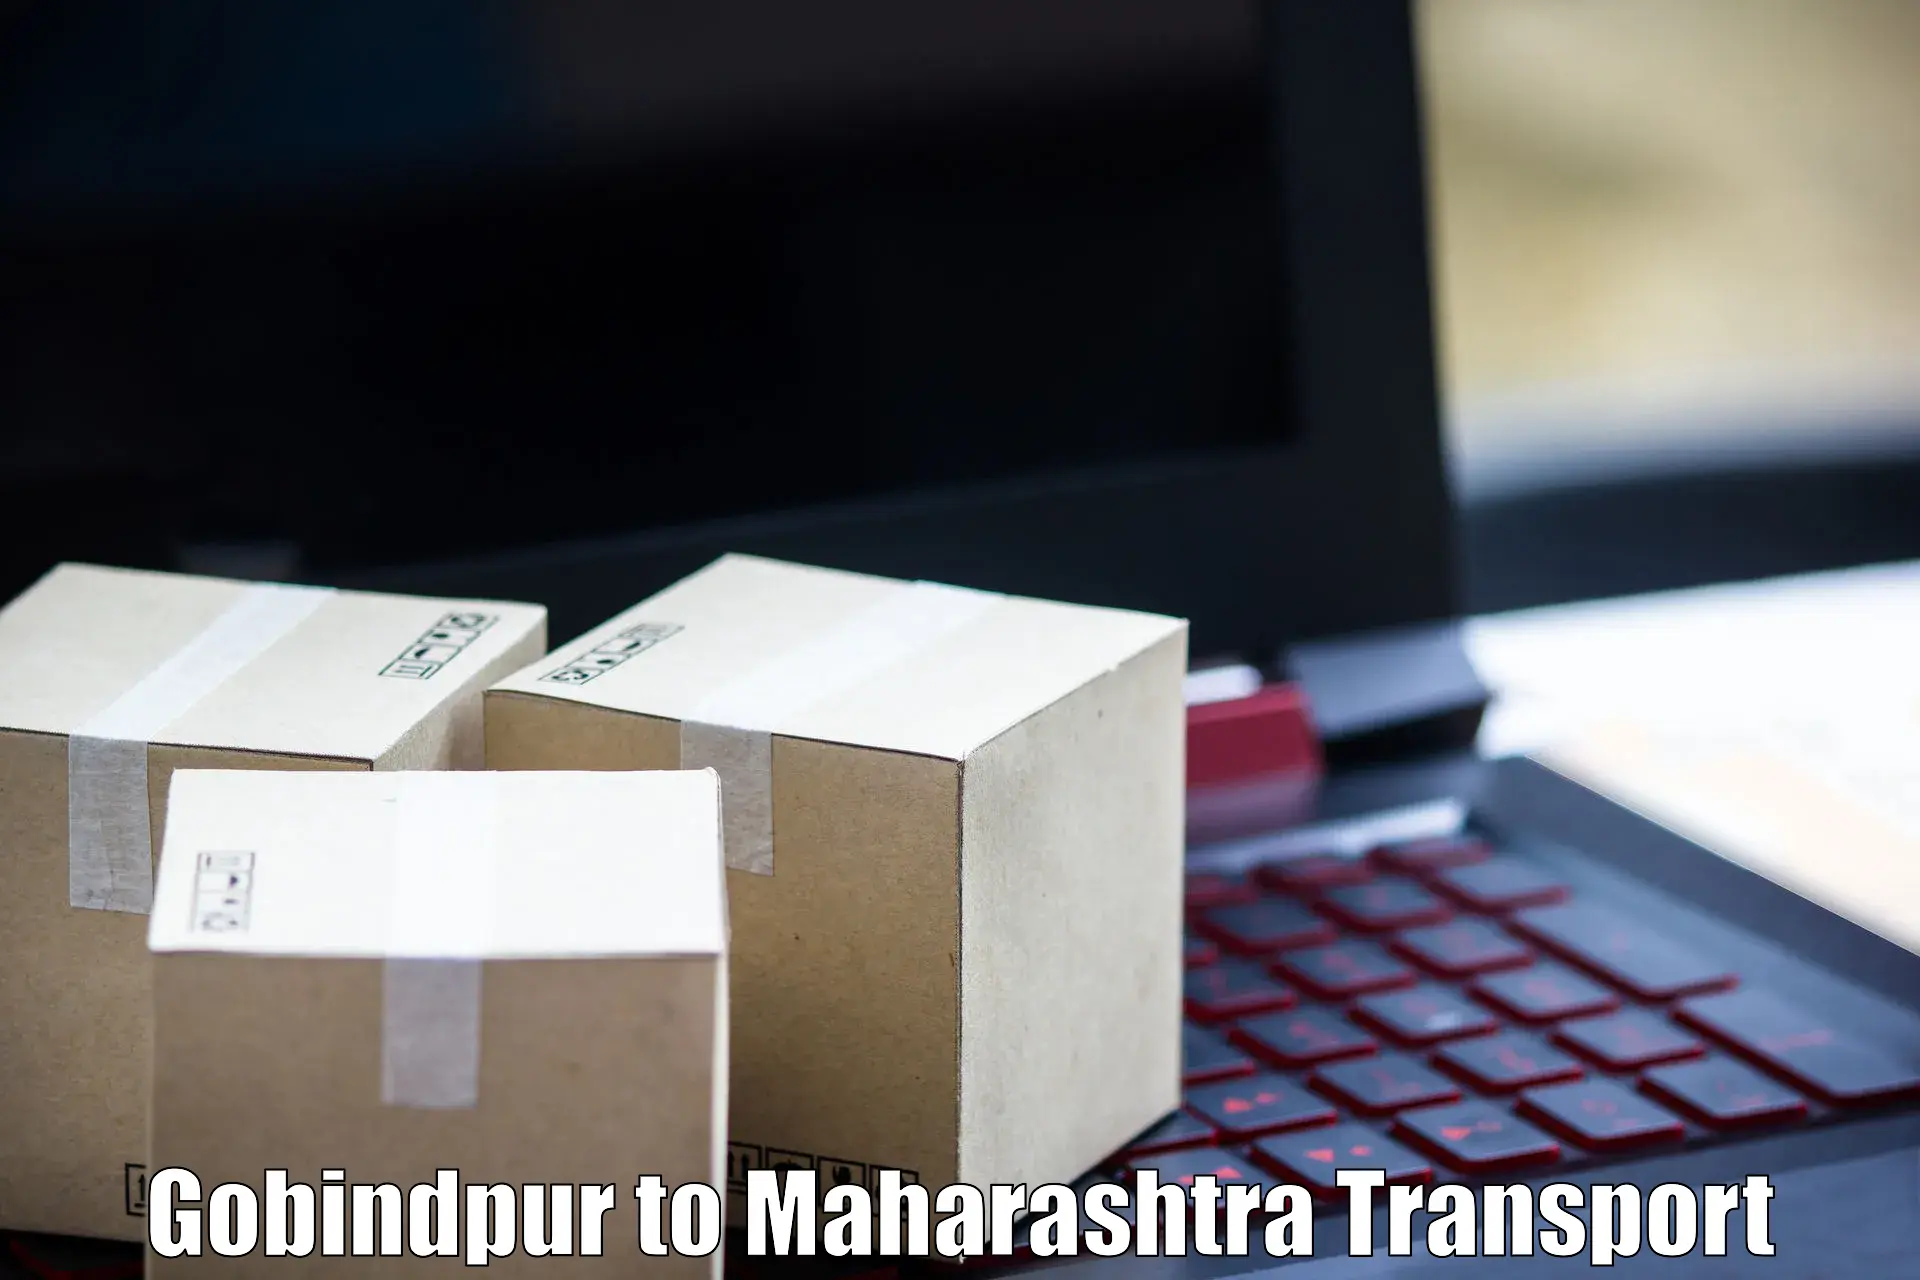 Shipping partner Gobindpur to Chalisgaon